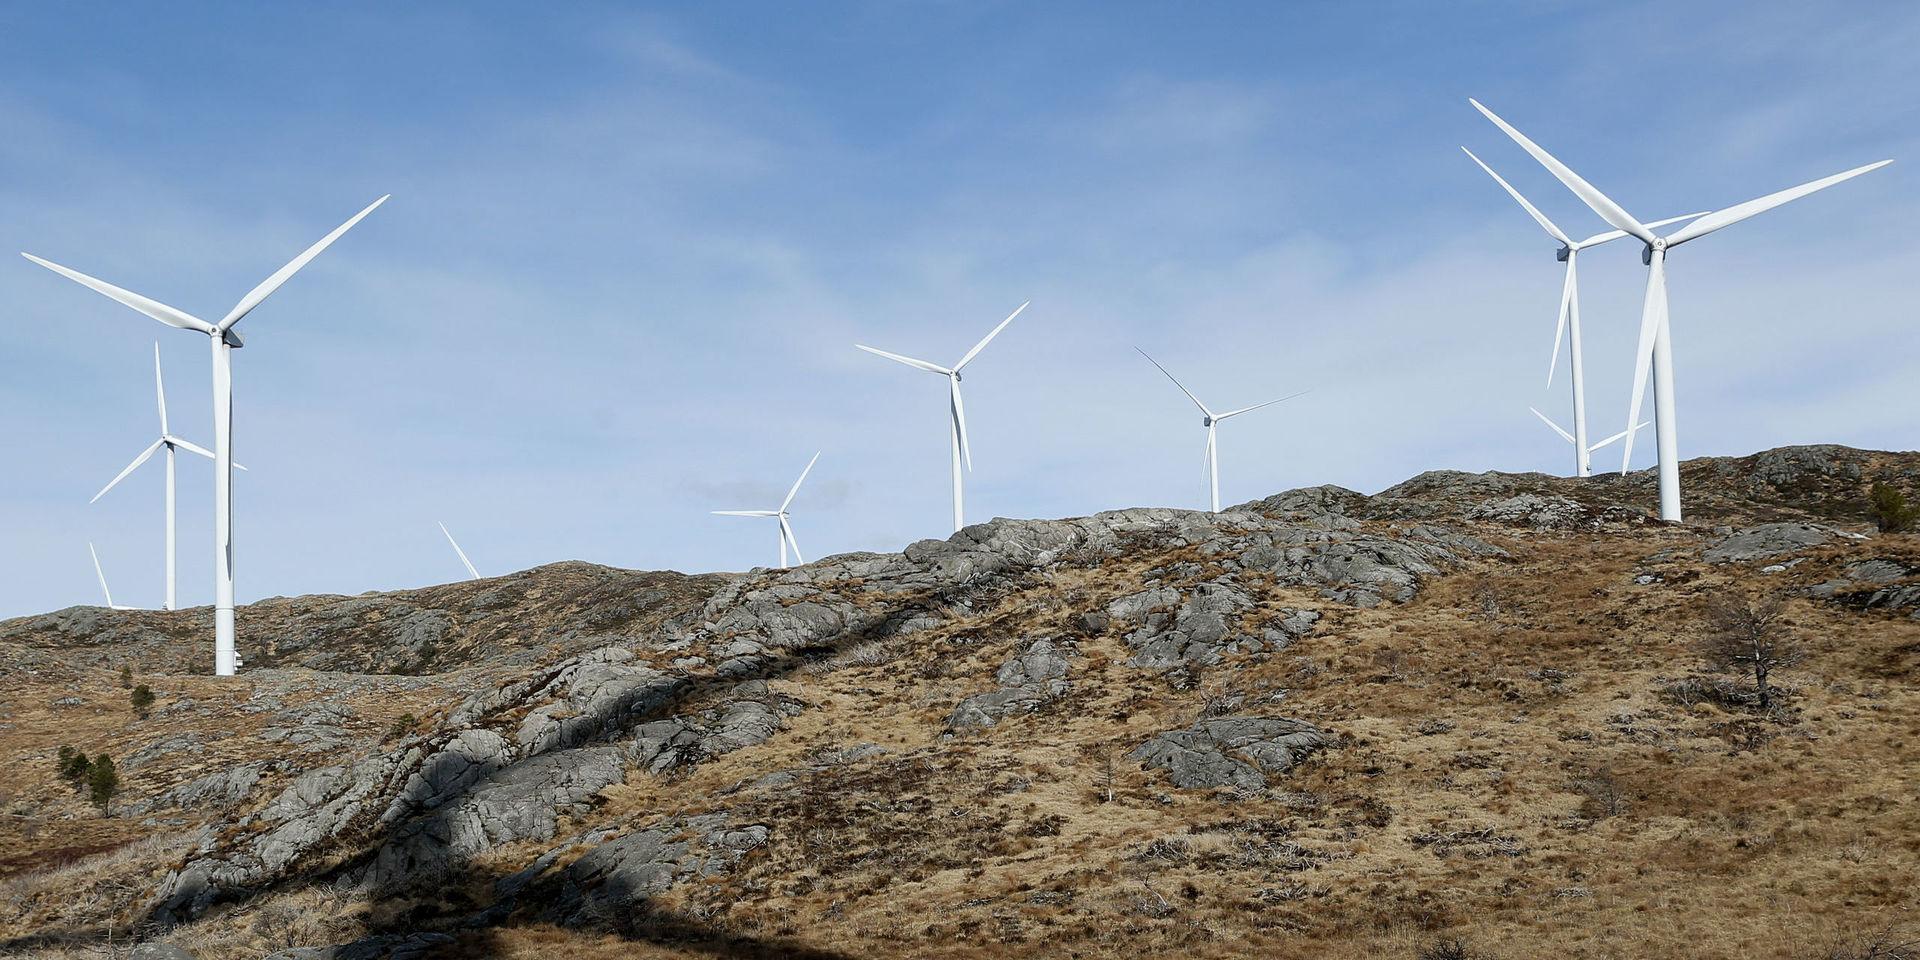 Sverige, och till och med Nordeuropa, är ett för litet område för att det med säkerhet ska blåsa tillräckligt i någon del av området för att vindkrafverk ska producera tillräckligt med el, menar insändarskribenten.